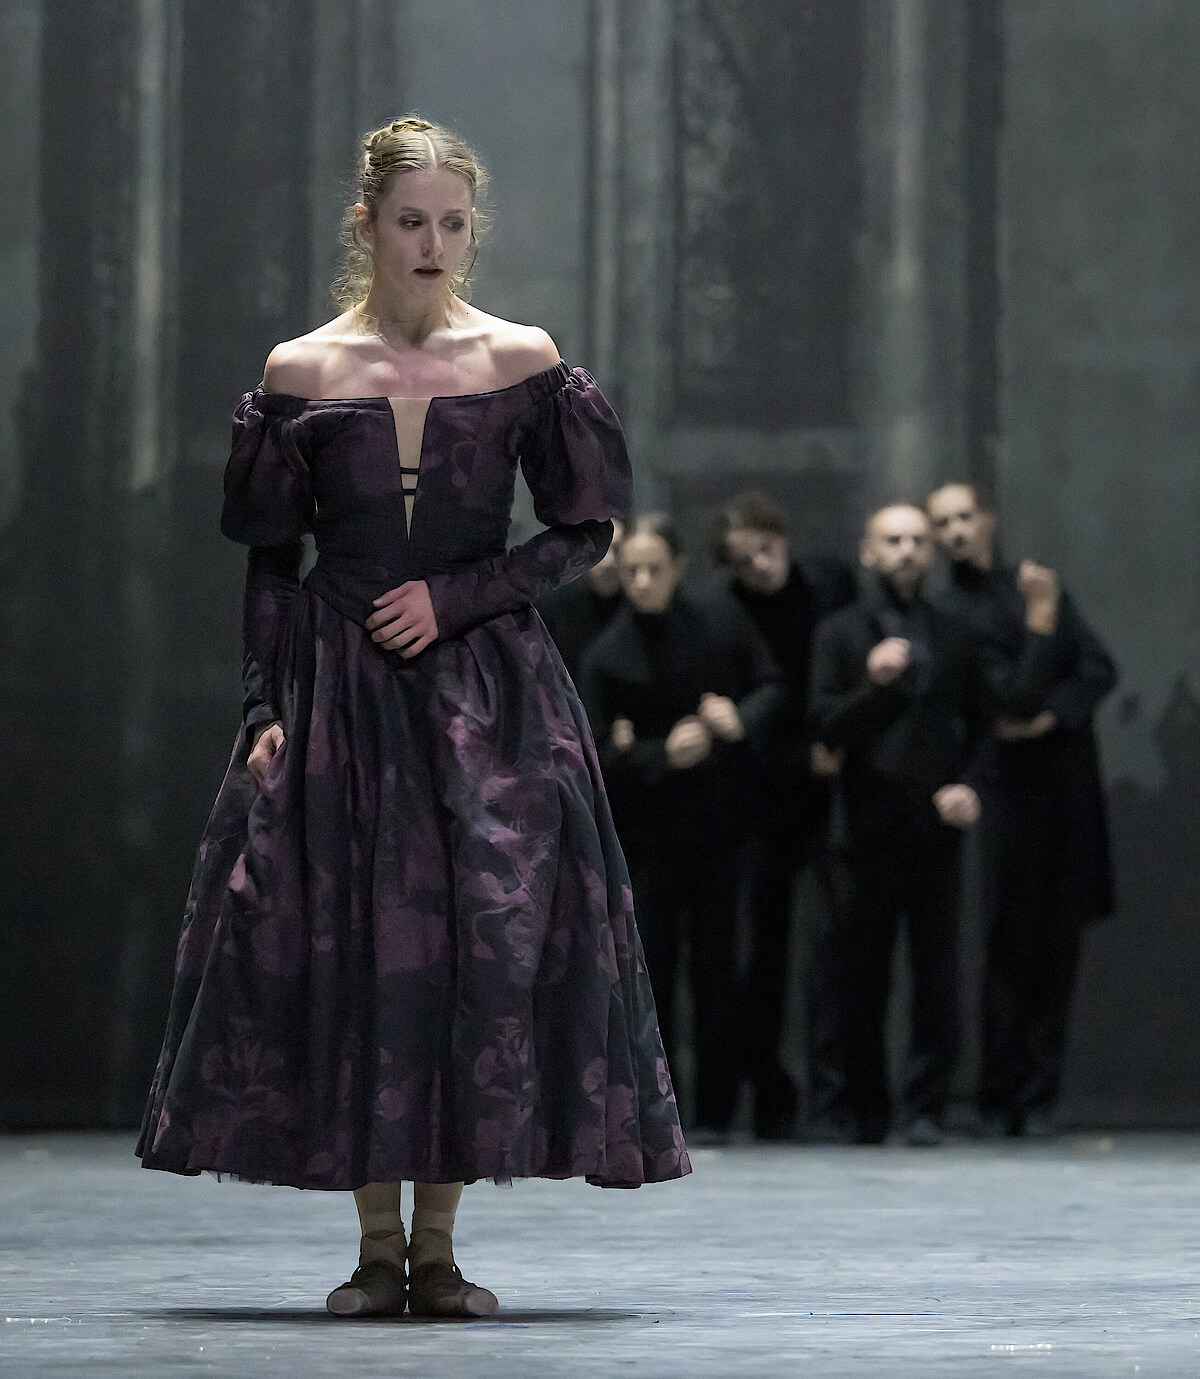 Weronika Frodyma als Emma Bovary steht angespannt am Bühnenrand und wird von Tänzern in schwarzen Anzügen beobachtet.